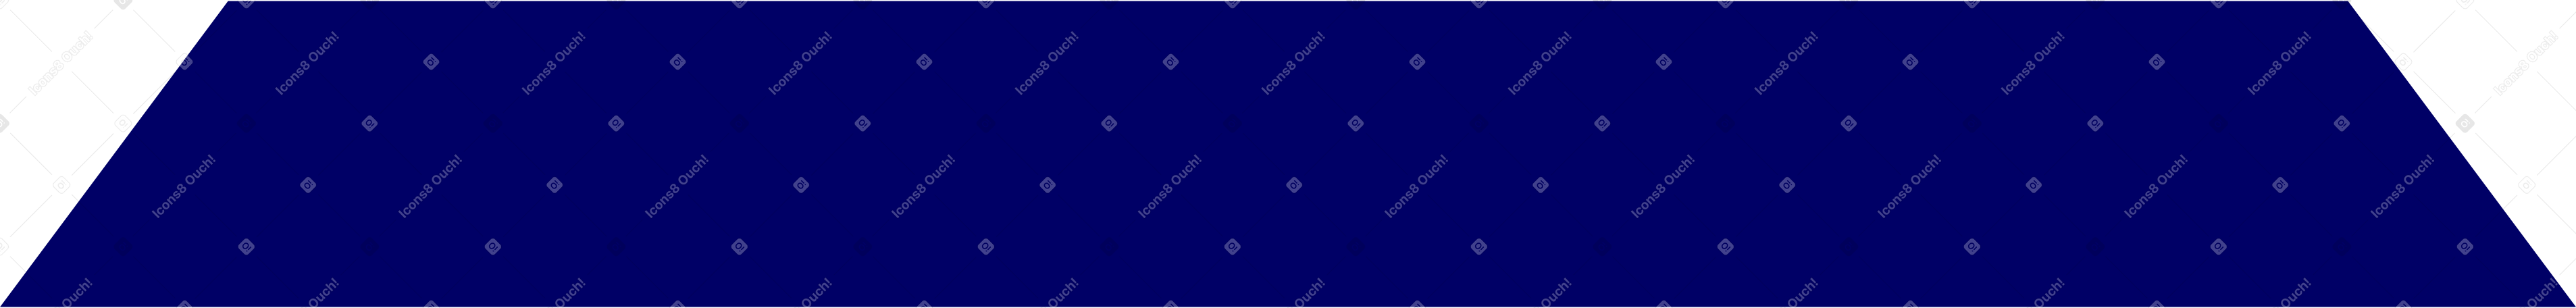 blue rug Illustration in PNG, SVG